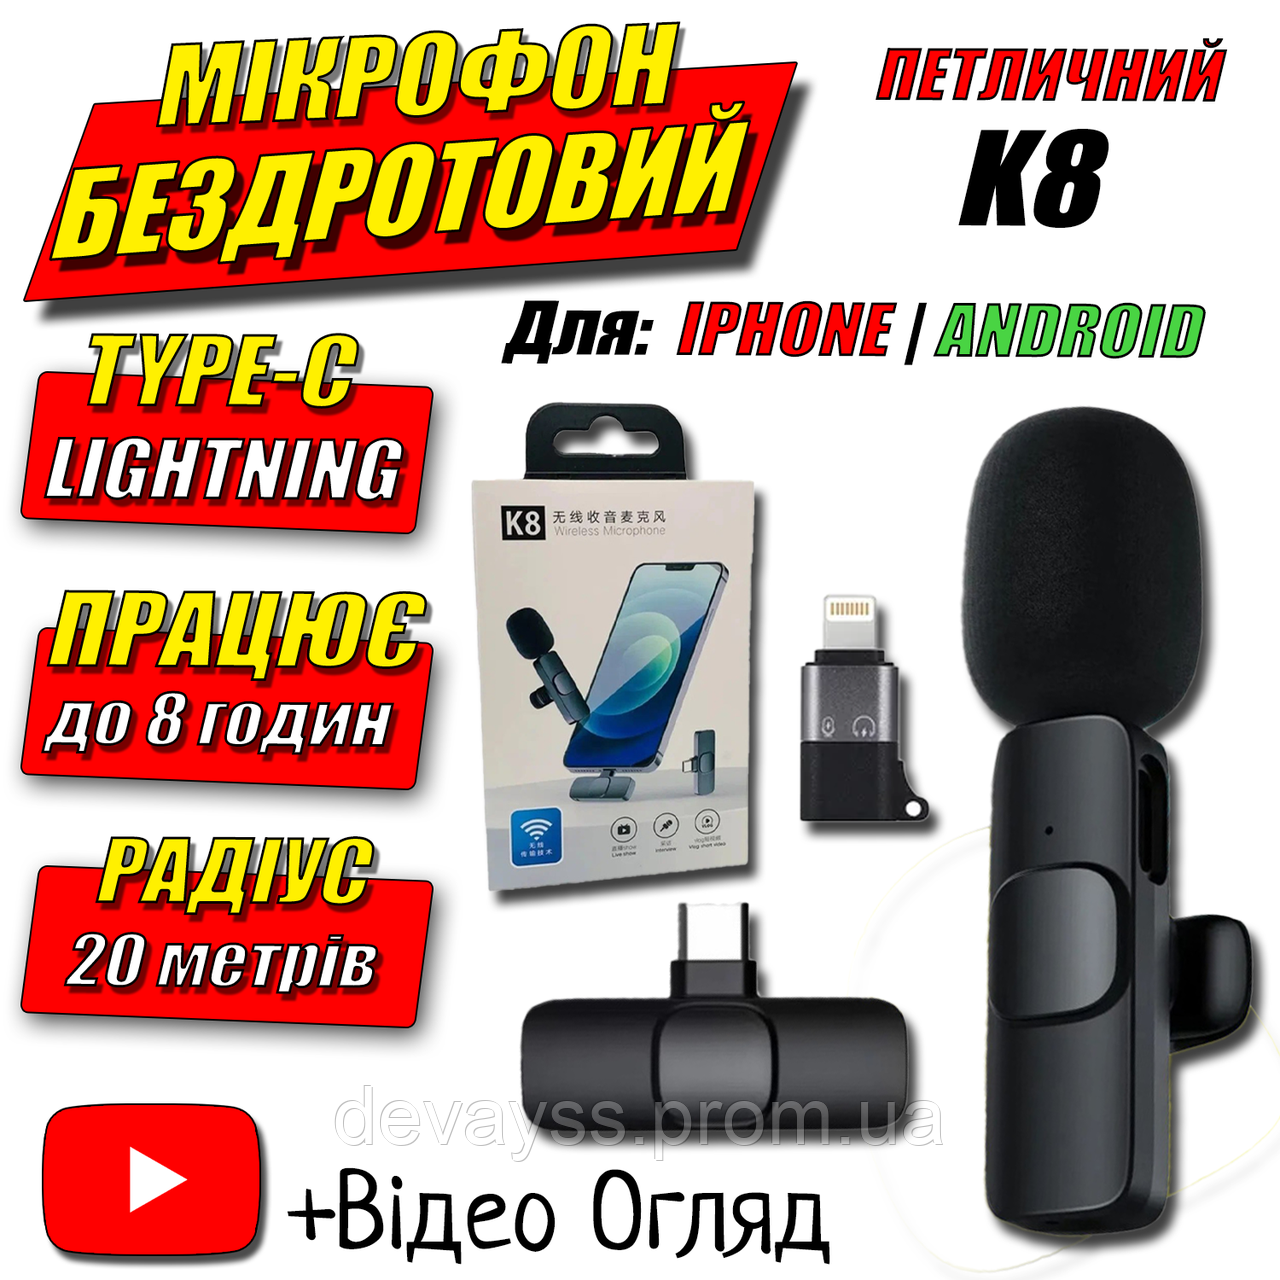 Бездротовий мікрофон петличний Wireless Microphone K8 всеспрямований (Type-C)/(Lightning) Чорний